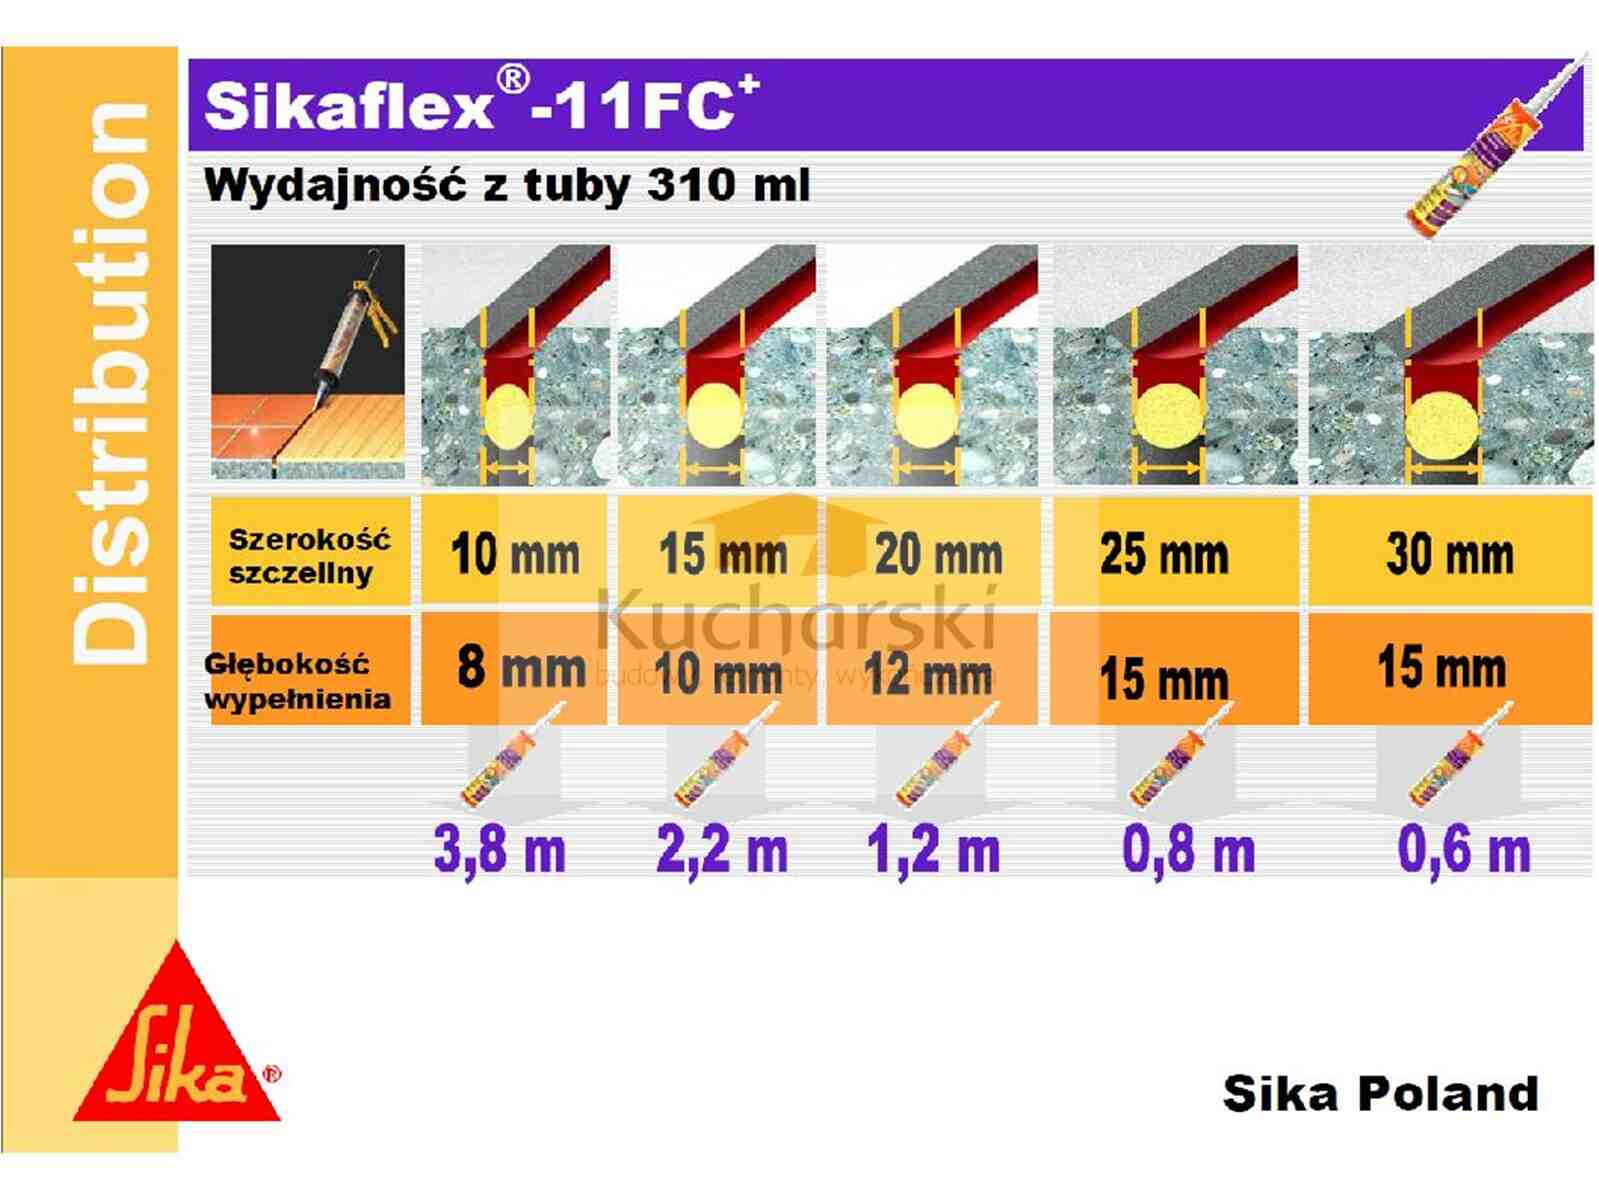 Sikaflex 11 fc zużycie